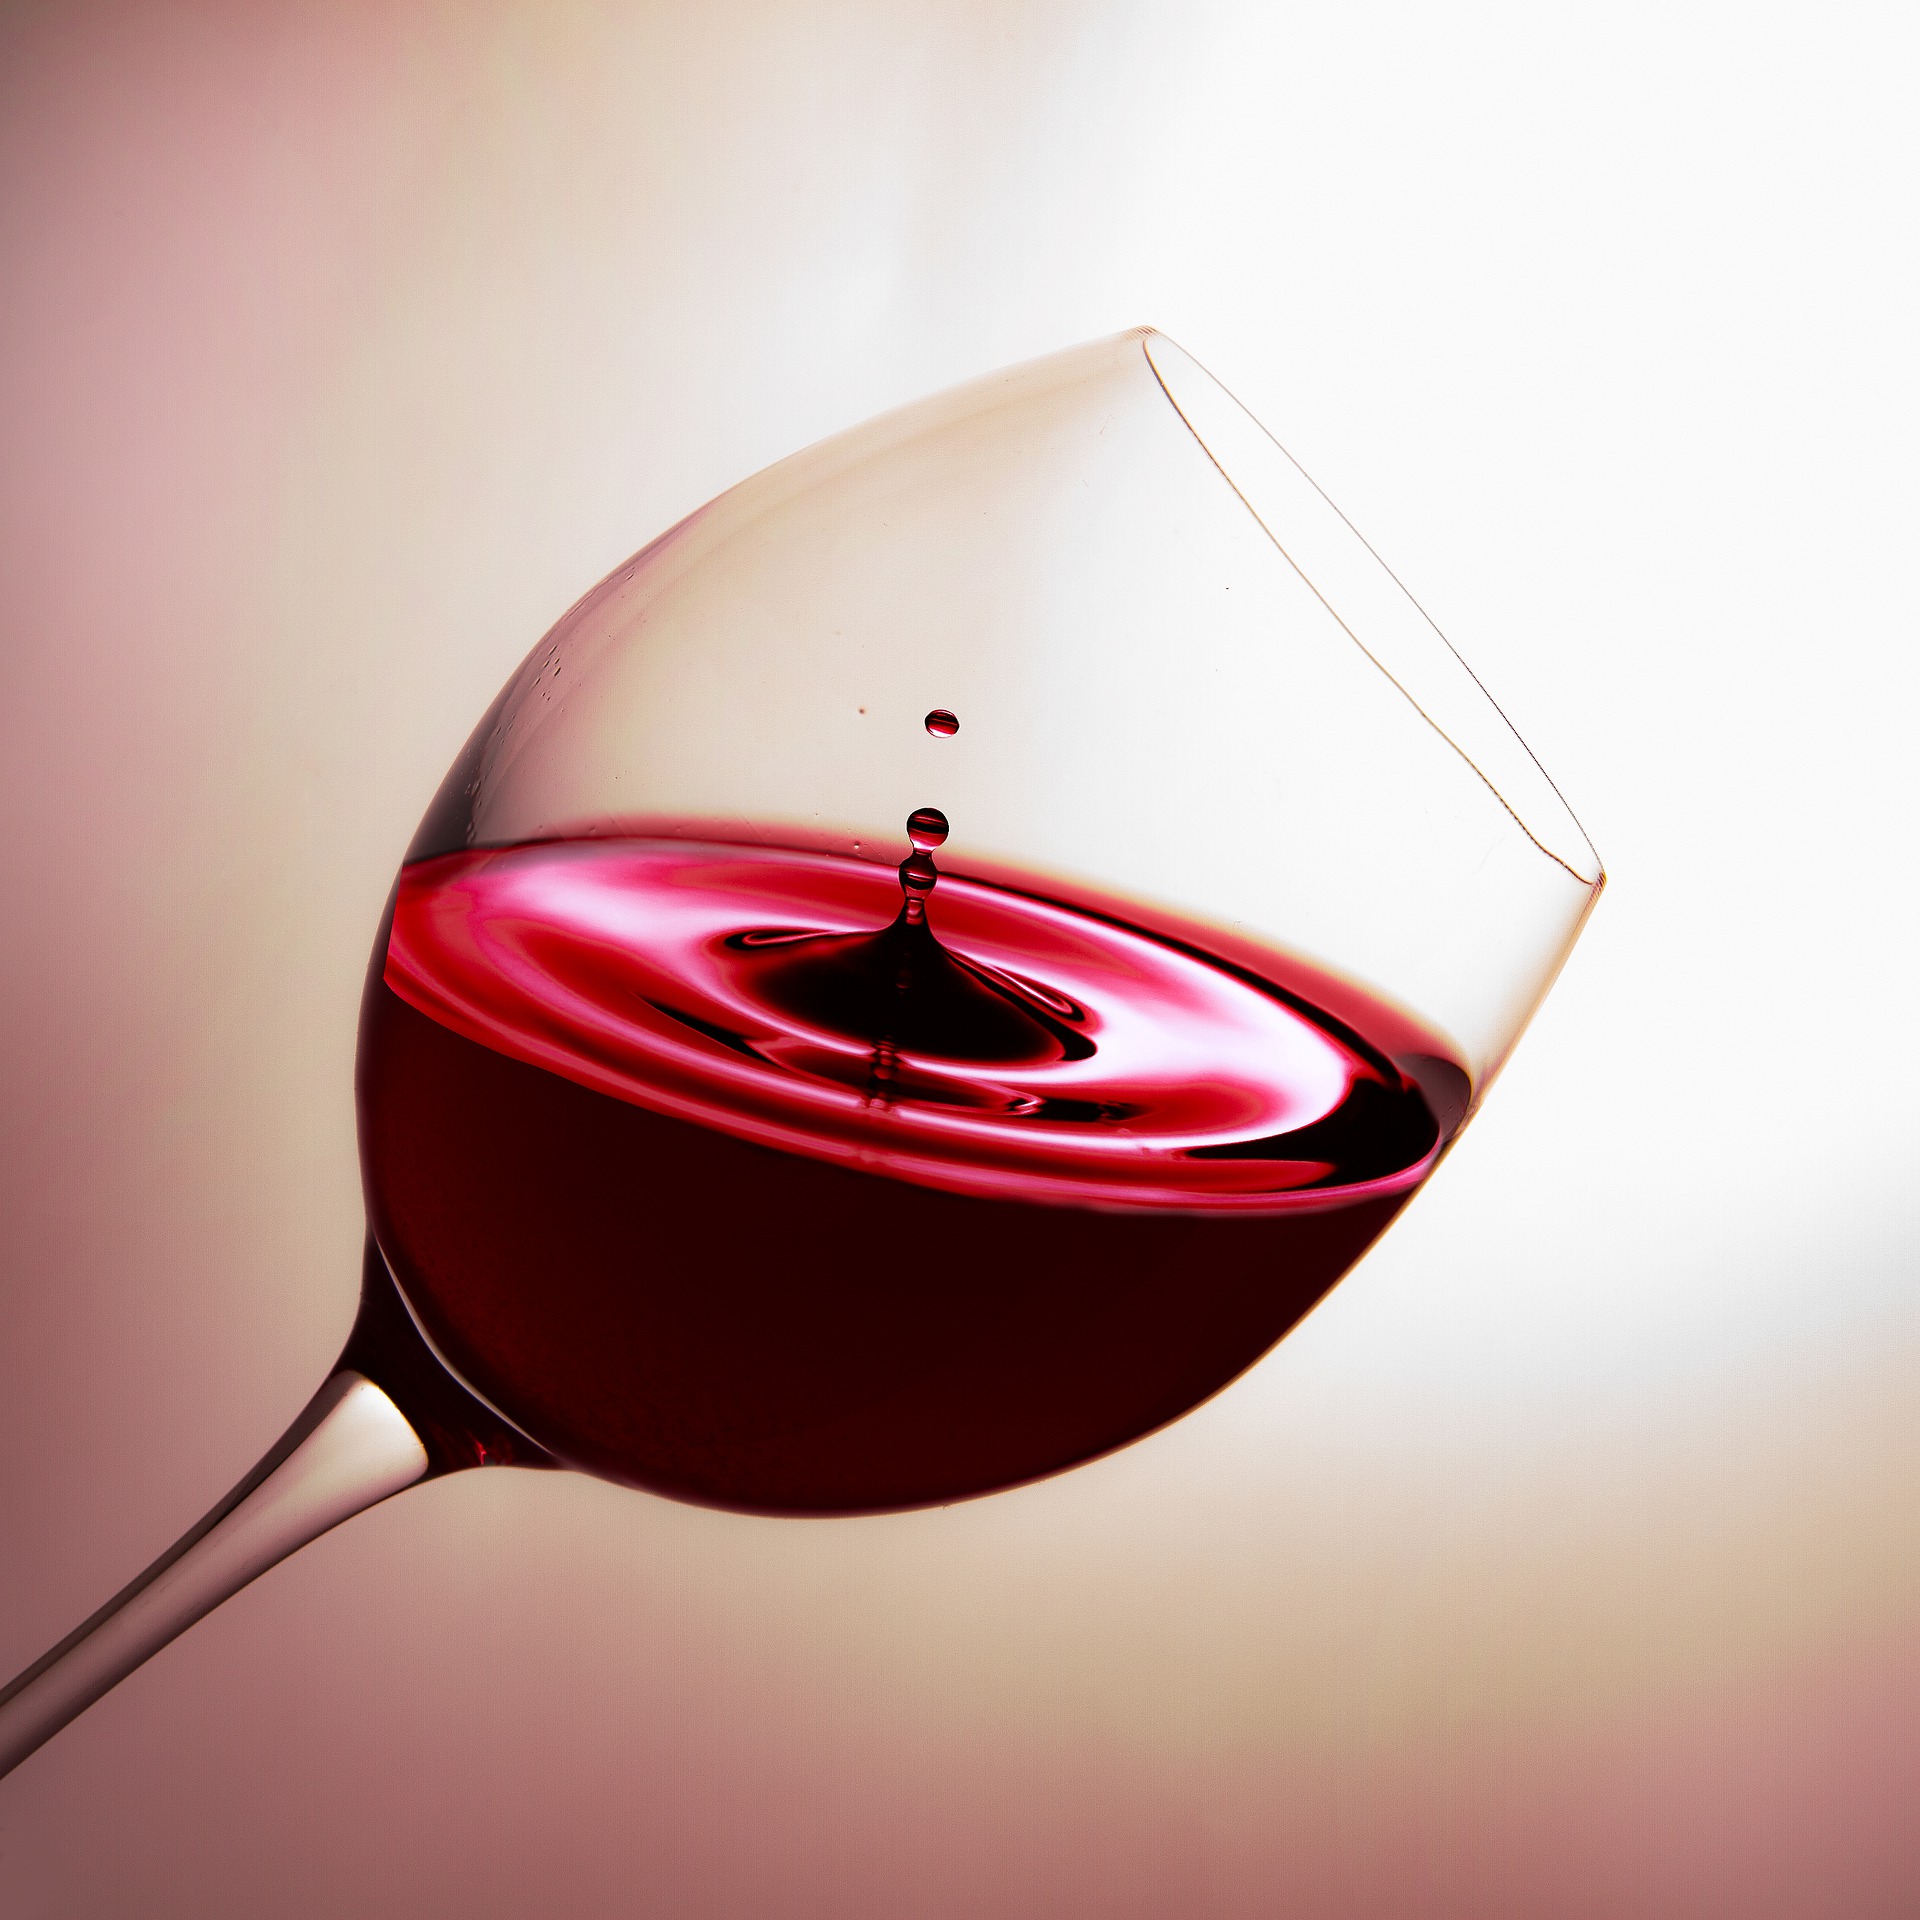 Rotwein im Weinglas